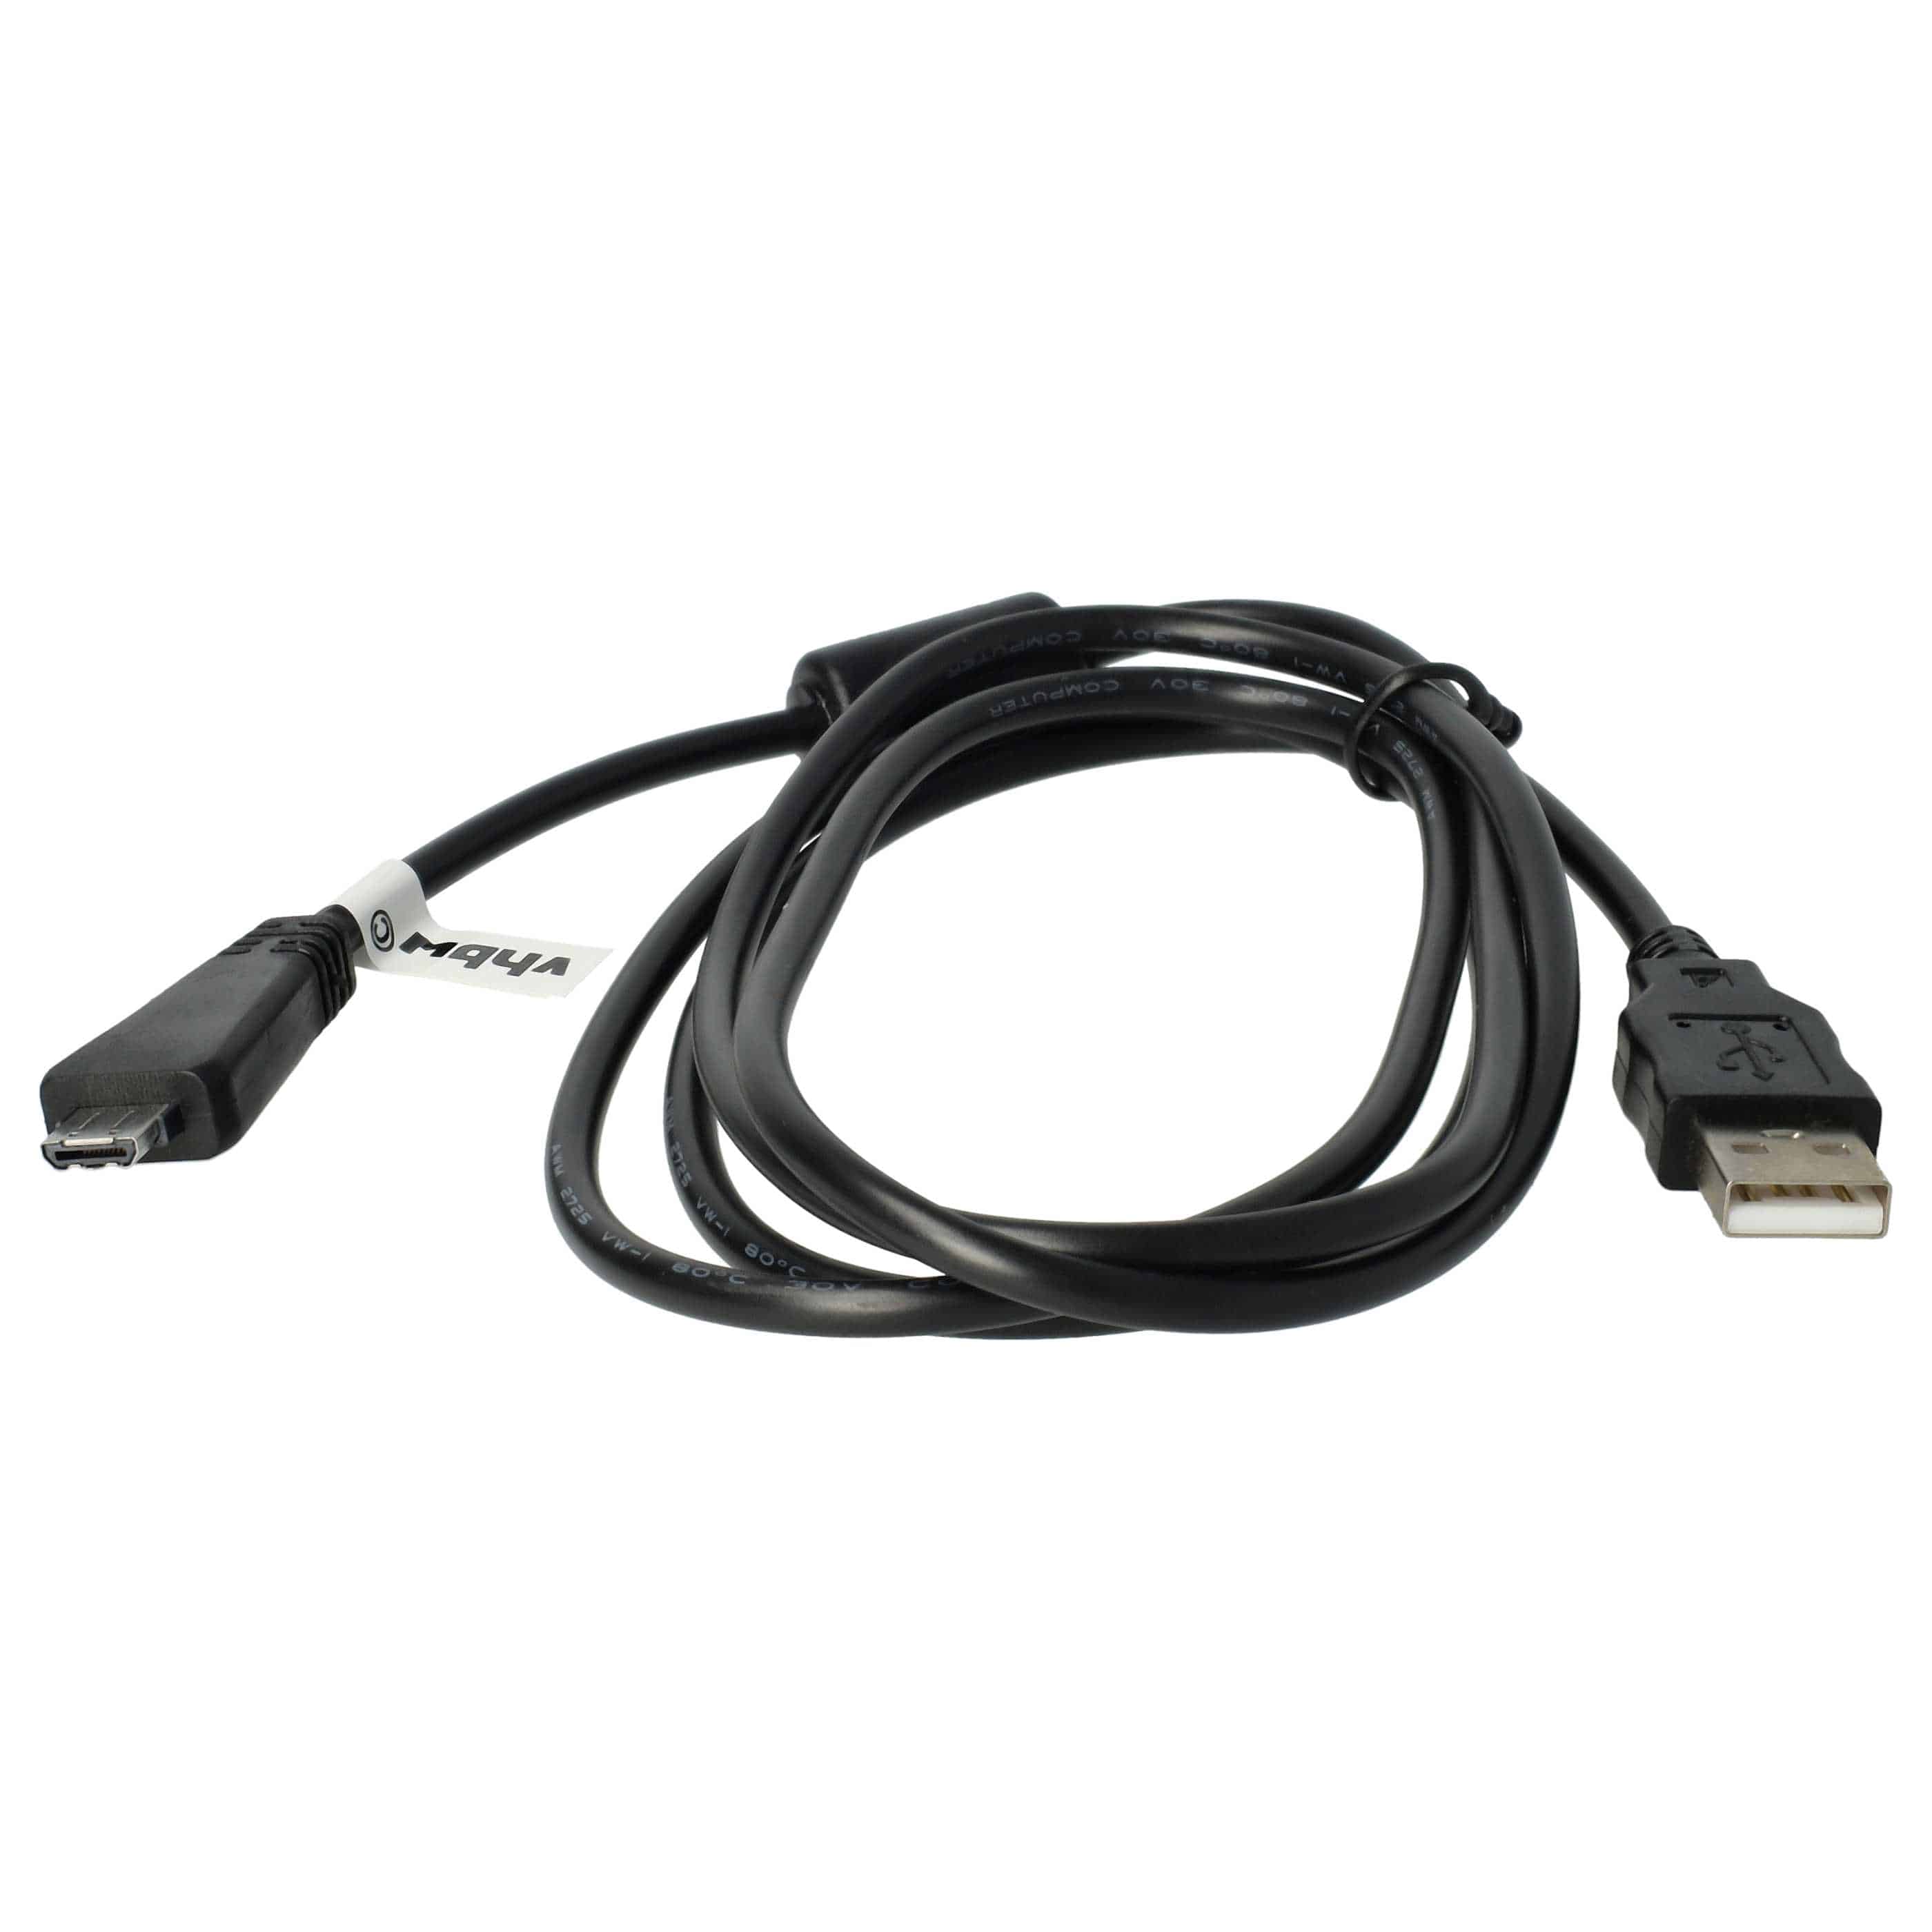 Cavo dati USB sostituisce Sony VMC-MD3 (senza funzione AV) per fotocamera, camcorder Sony - 150 cm